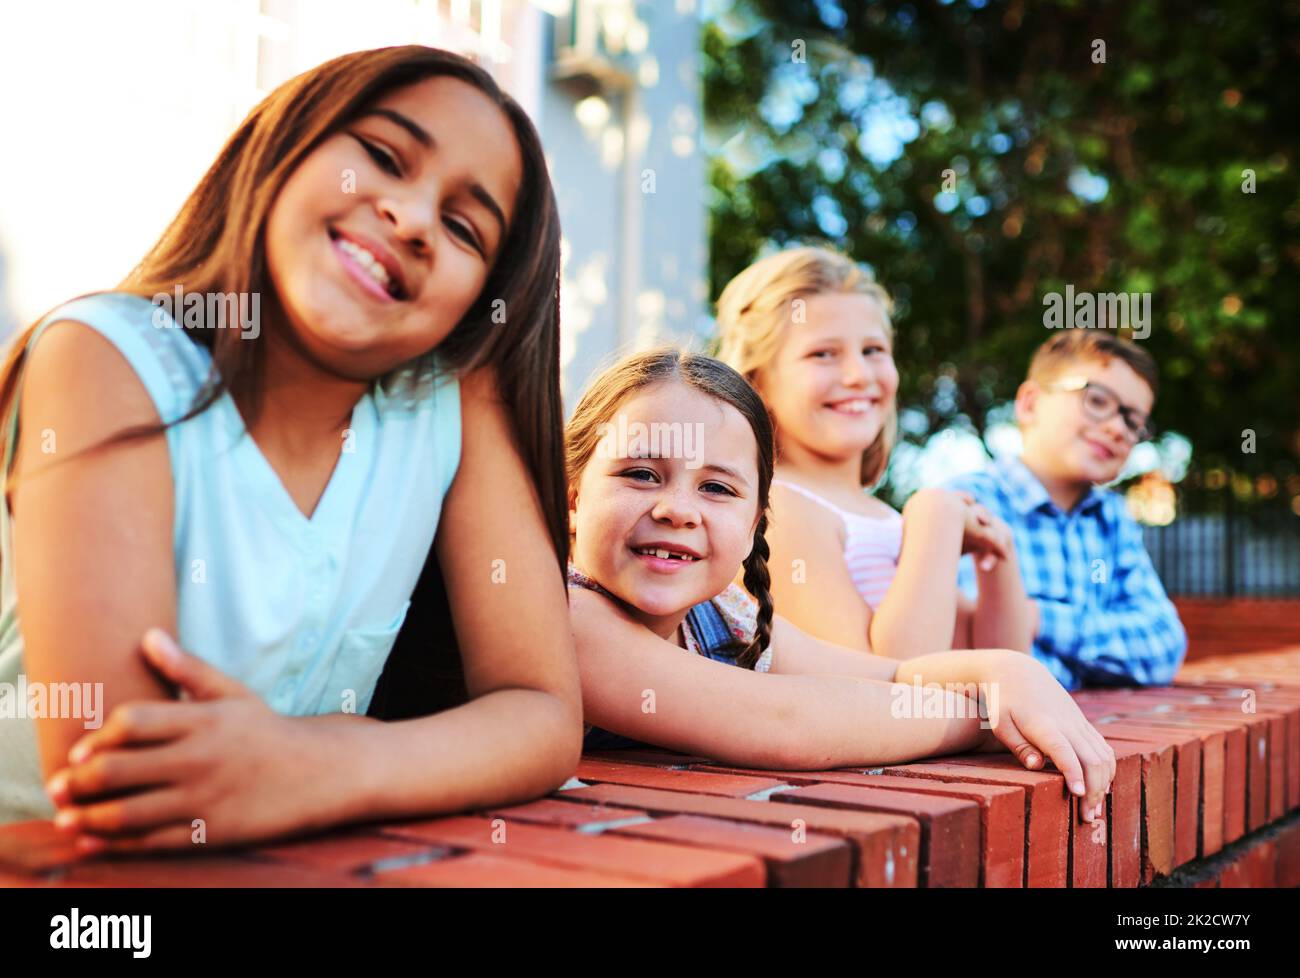 Venez vous détendre avec les enfants. Portrait d'un groupe de jeunes enfants jouant ensemble à l'extérieur. Banque D'Images